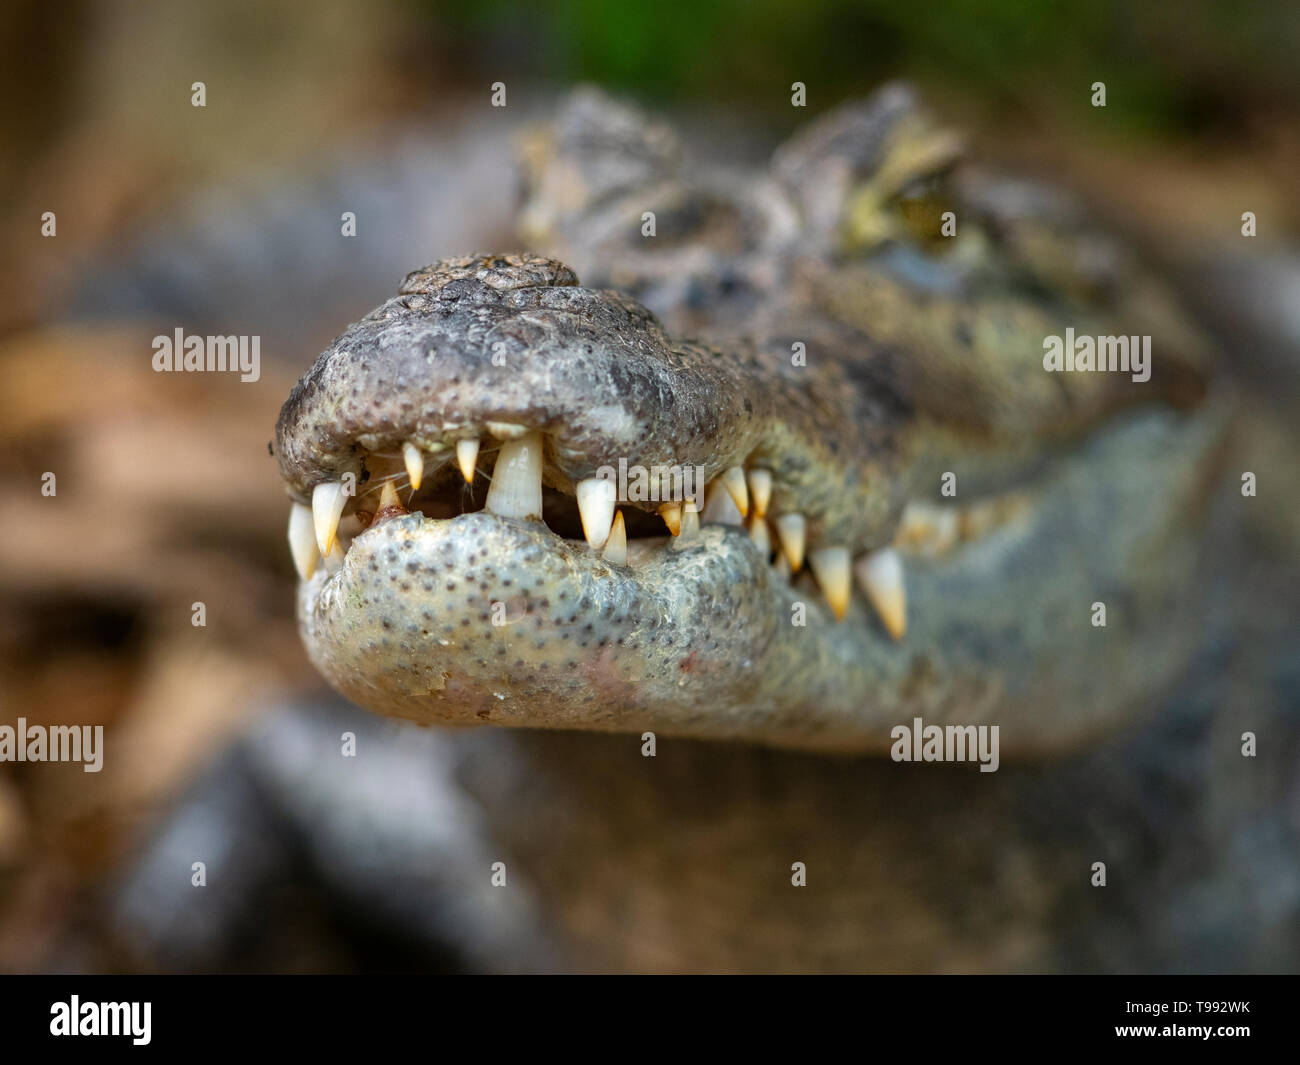 El caimán caimán caiman caiman crocodilus le costó a Rica América del Sur Foto de stock